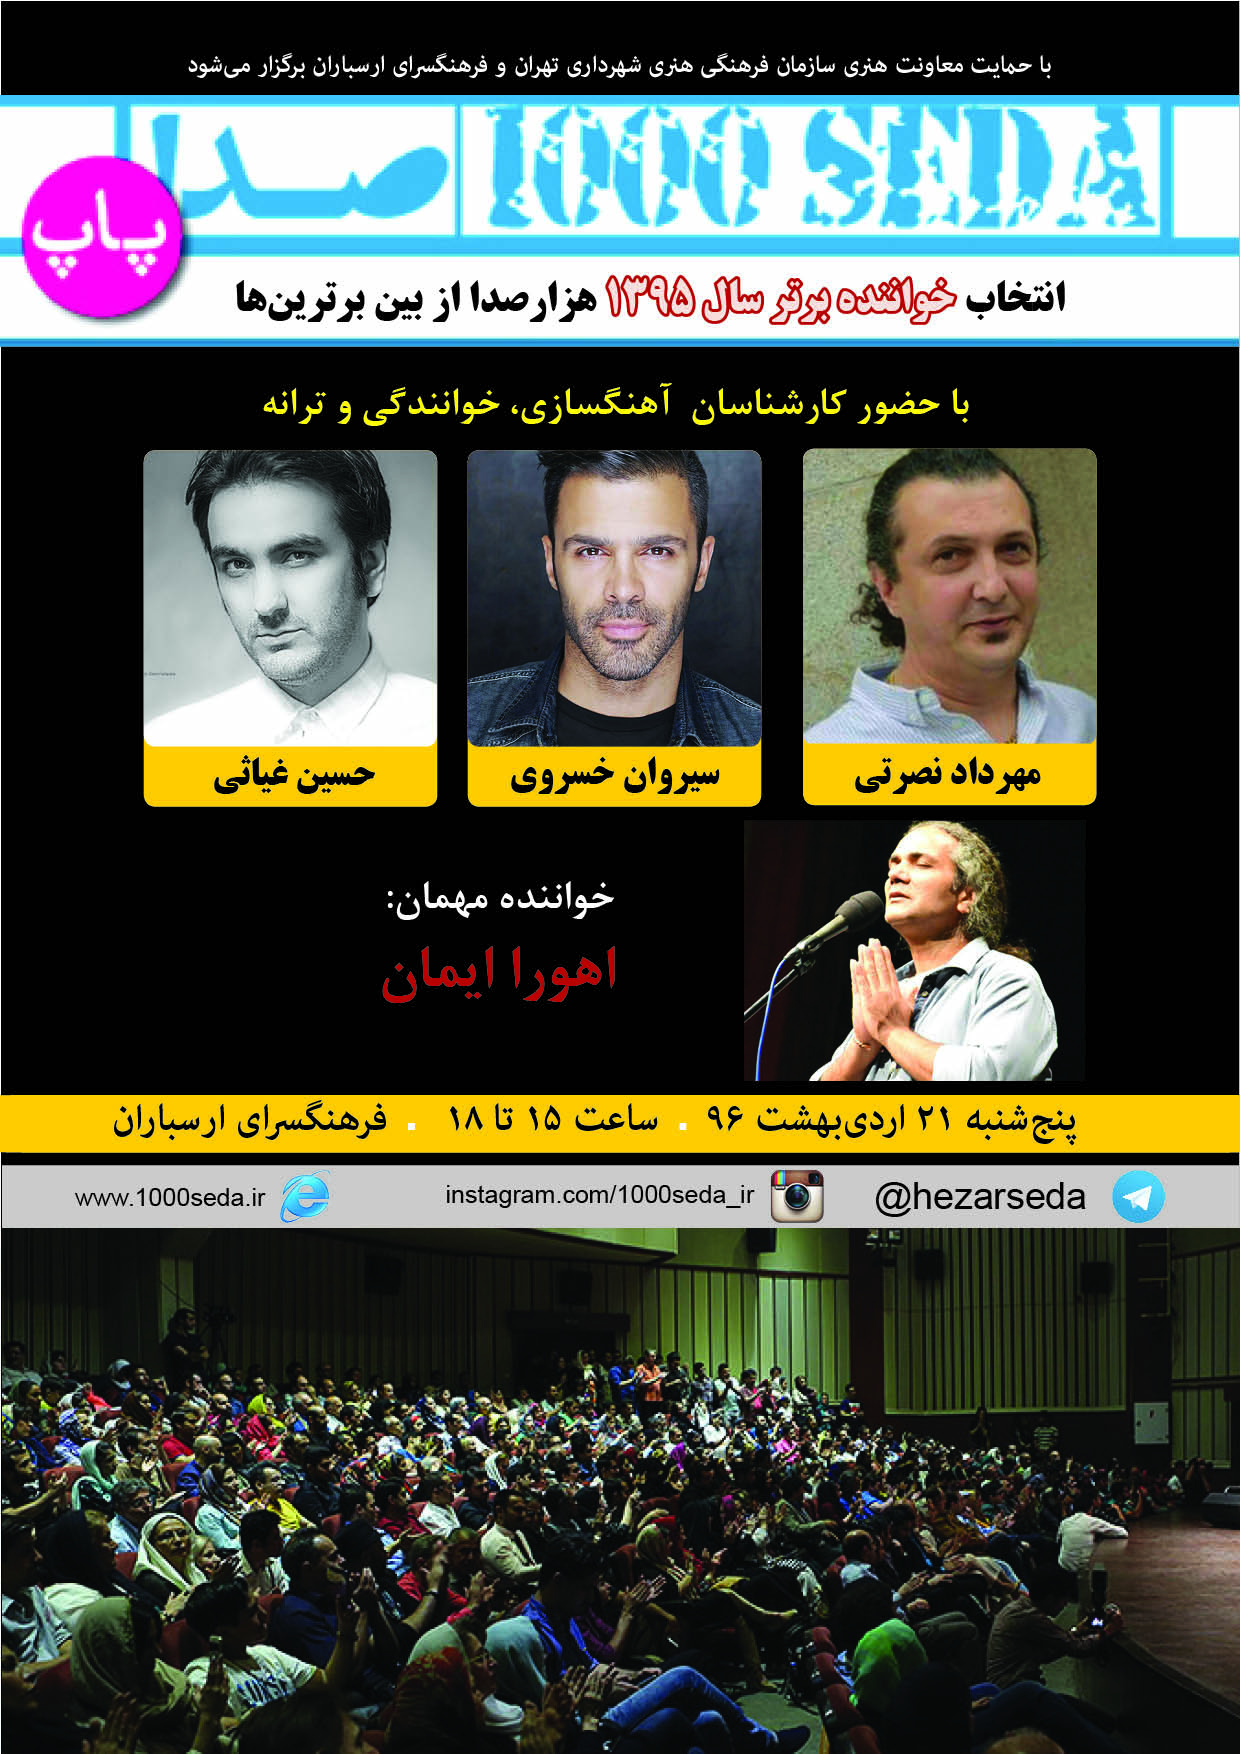 سیروان خسروی، مهرداد نصرتی و حسین غیاثی، کارشناسان فینال